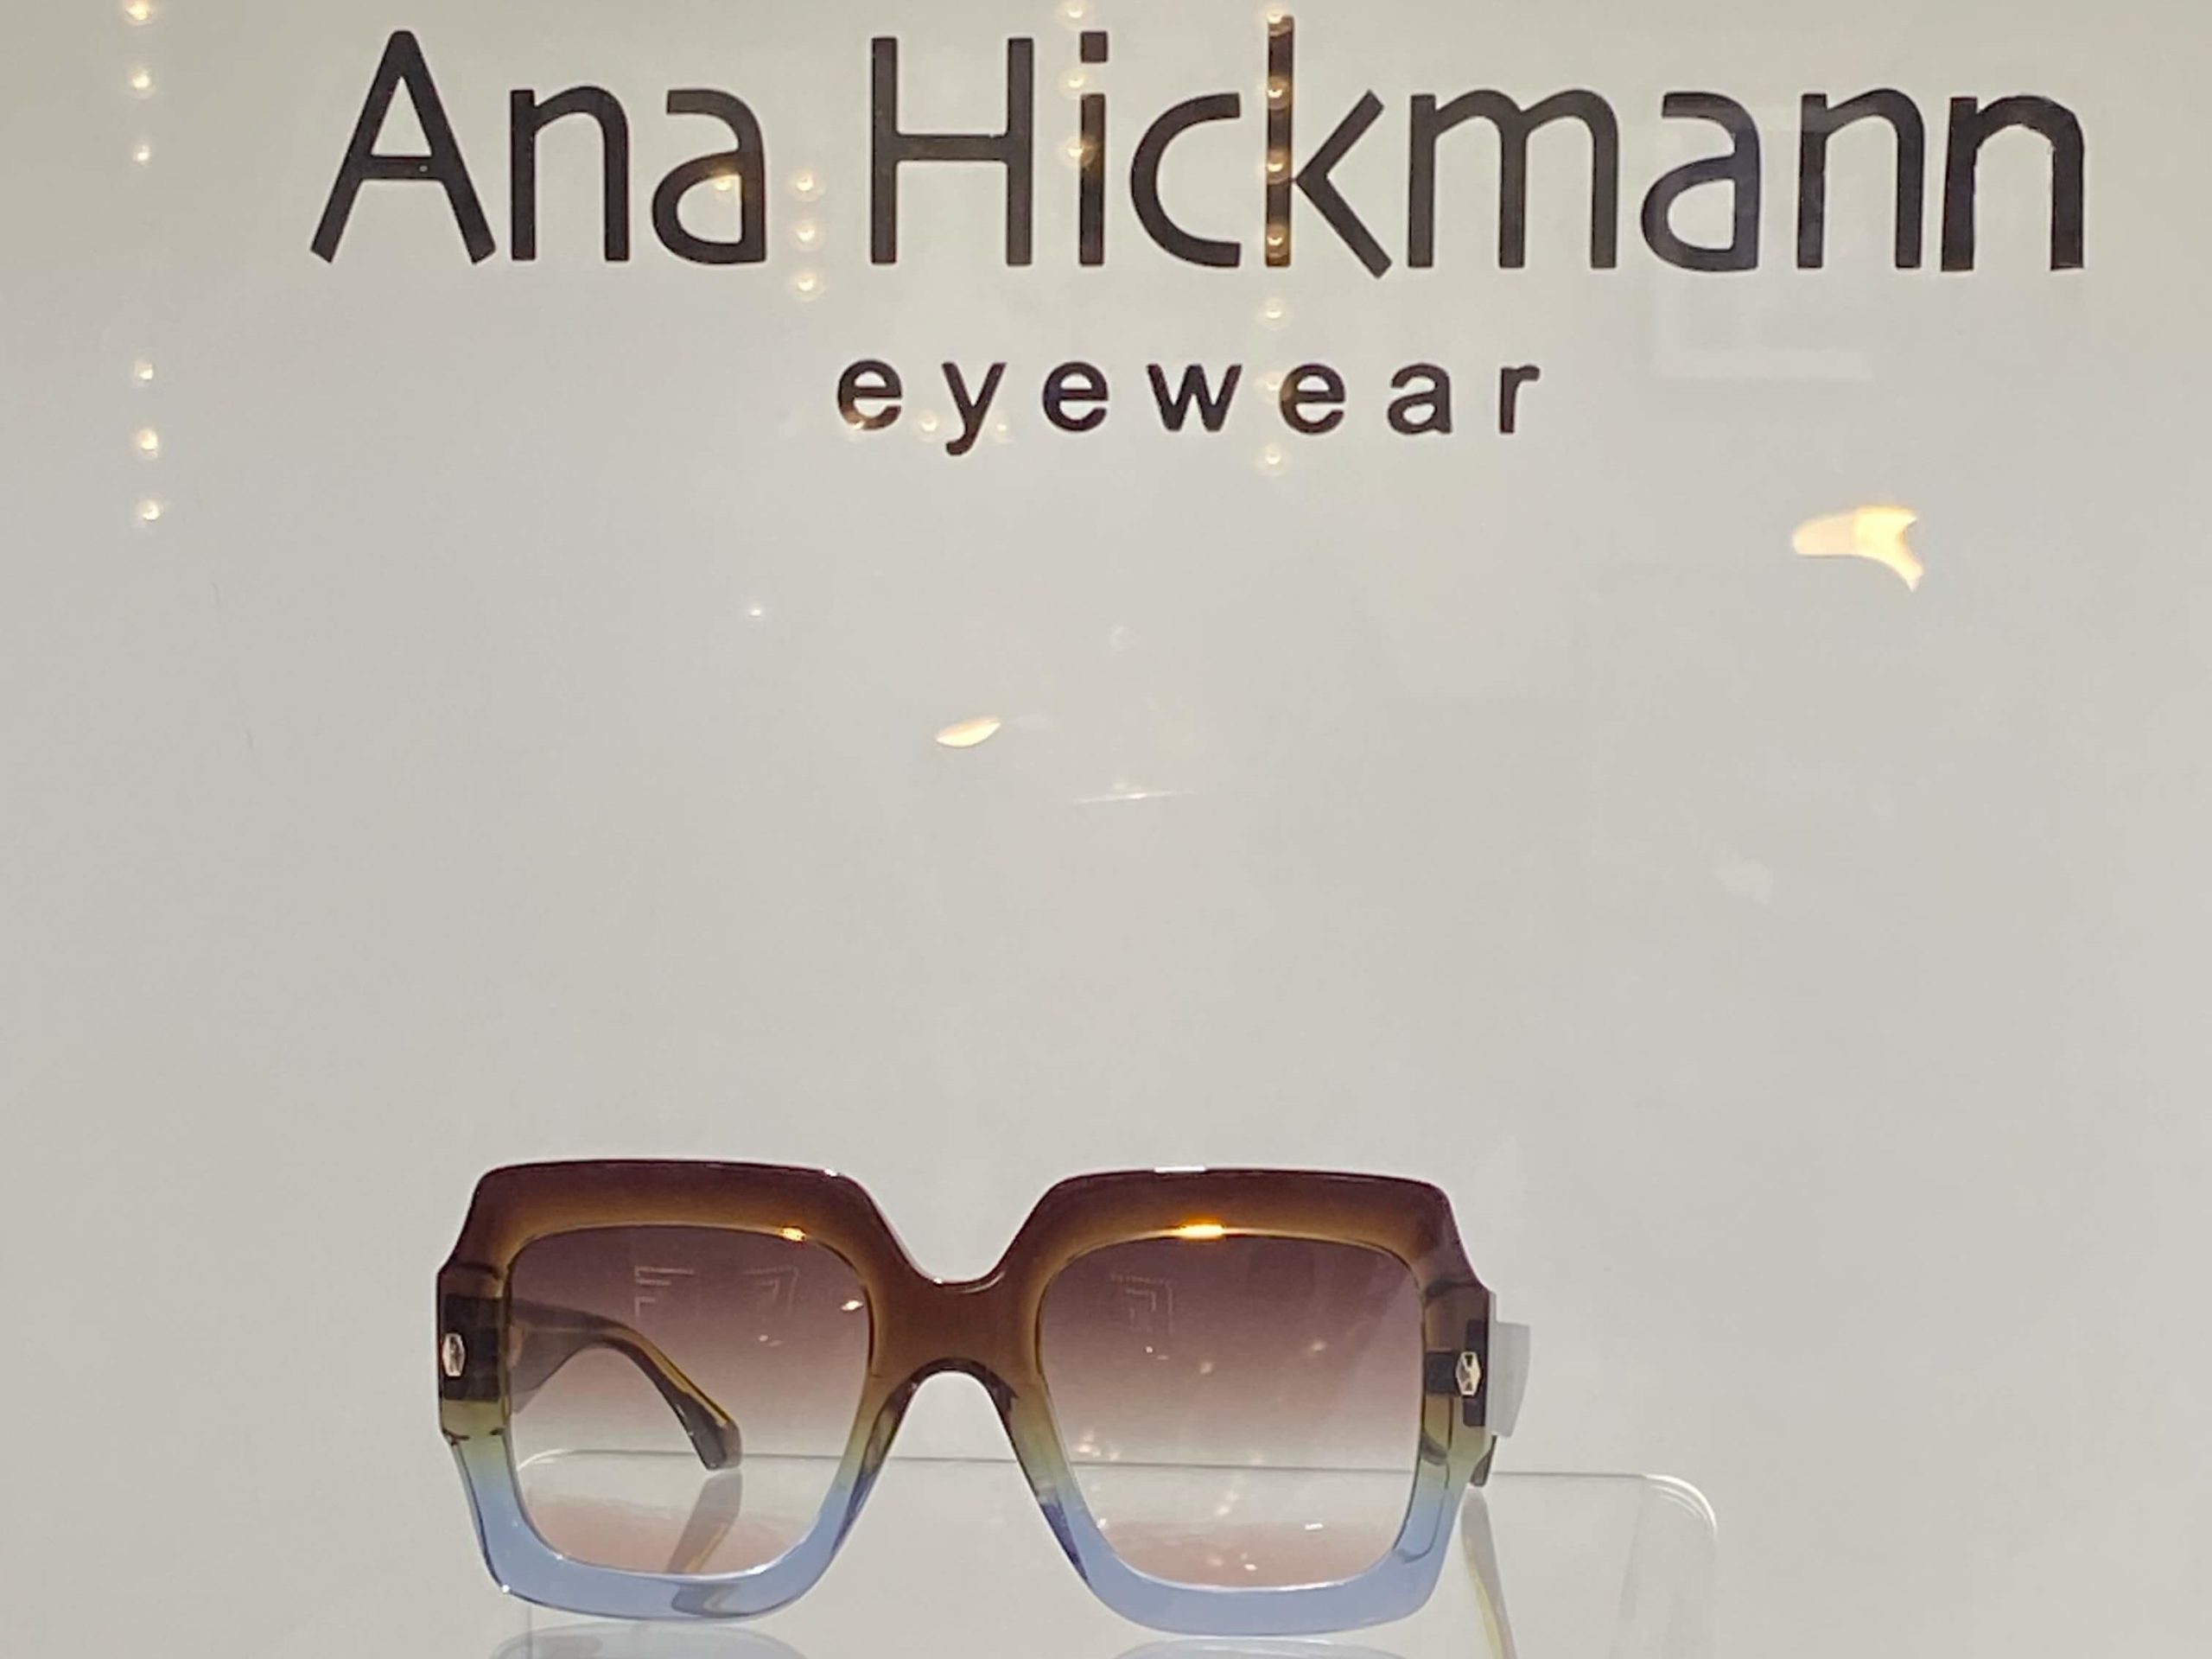 Sonnenbrille von Ana Hickman